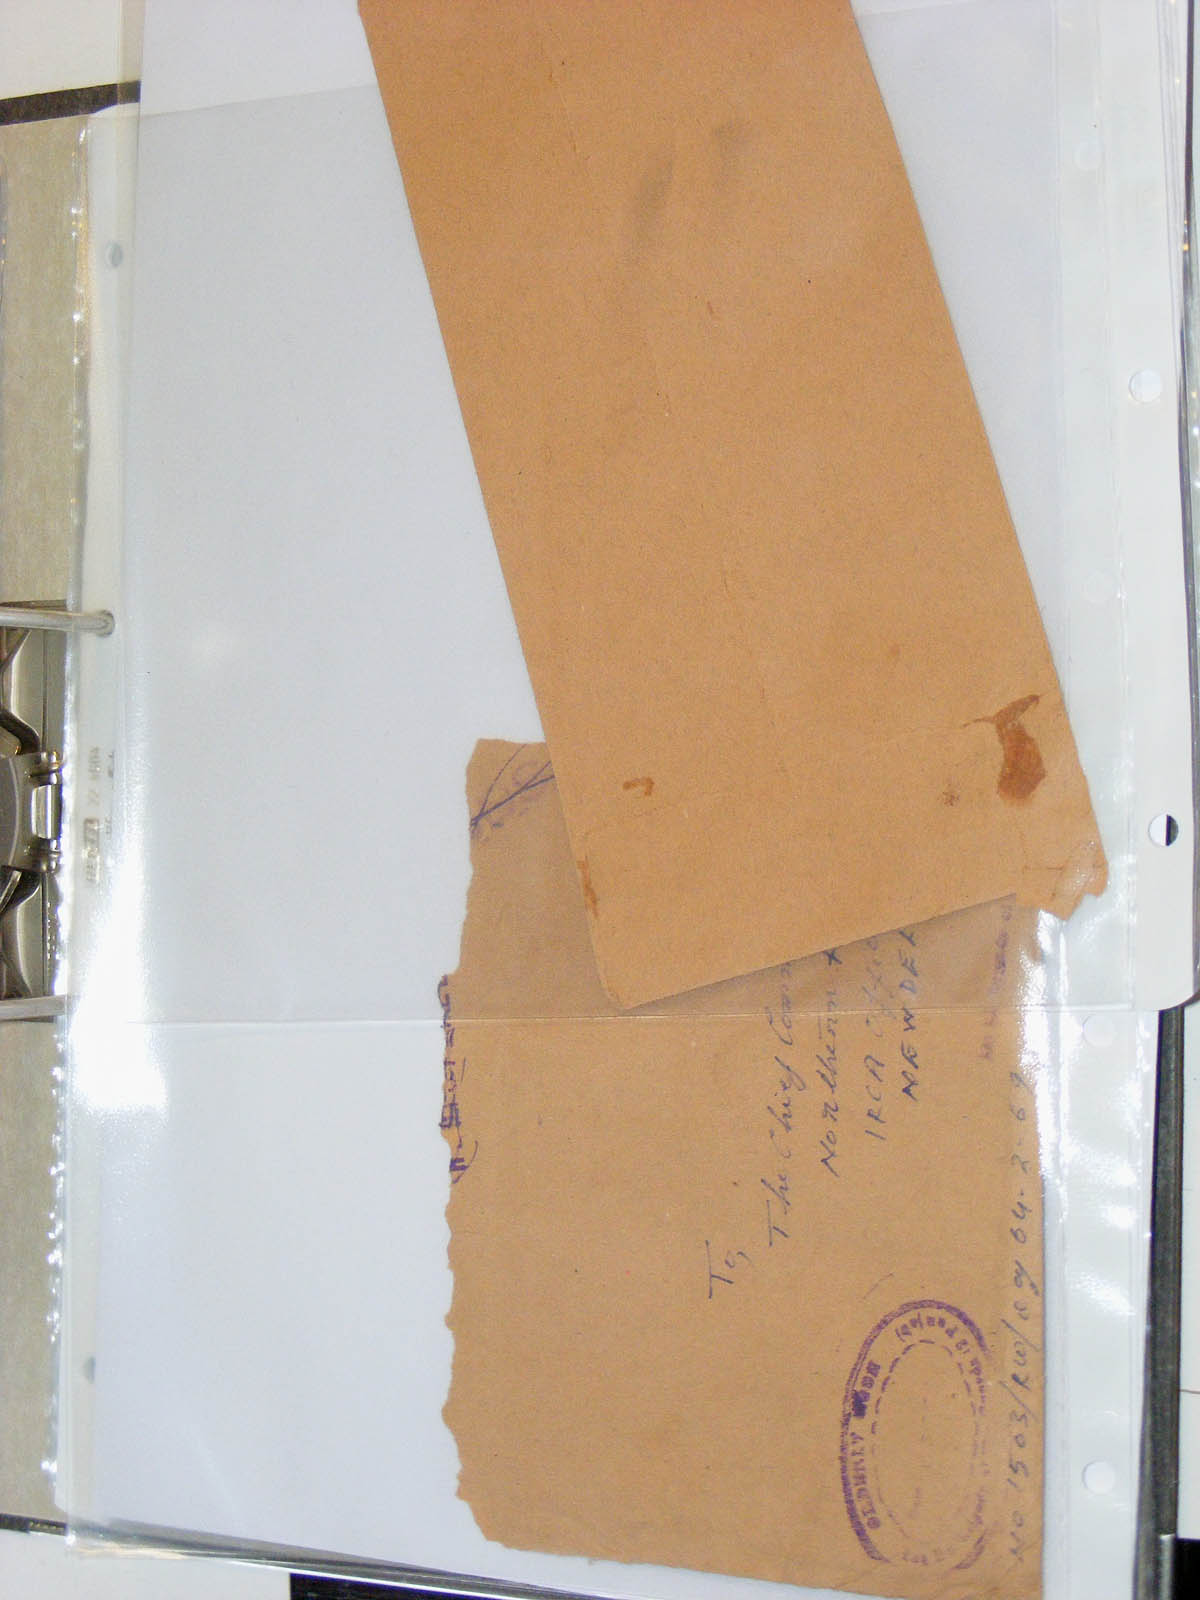 19584-2 274 - 19584 India dienst brieven.